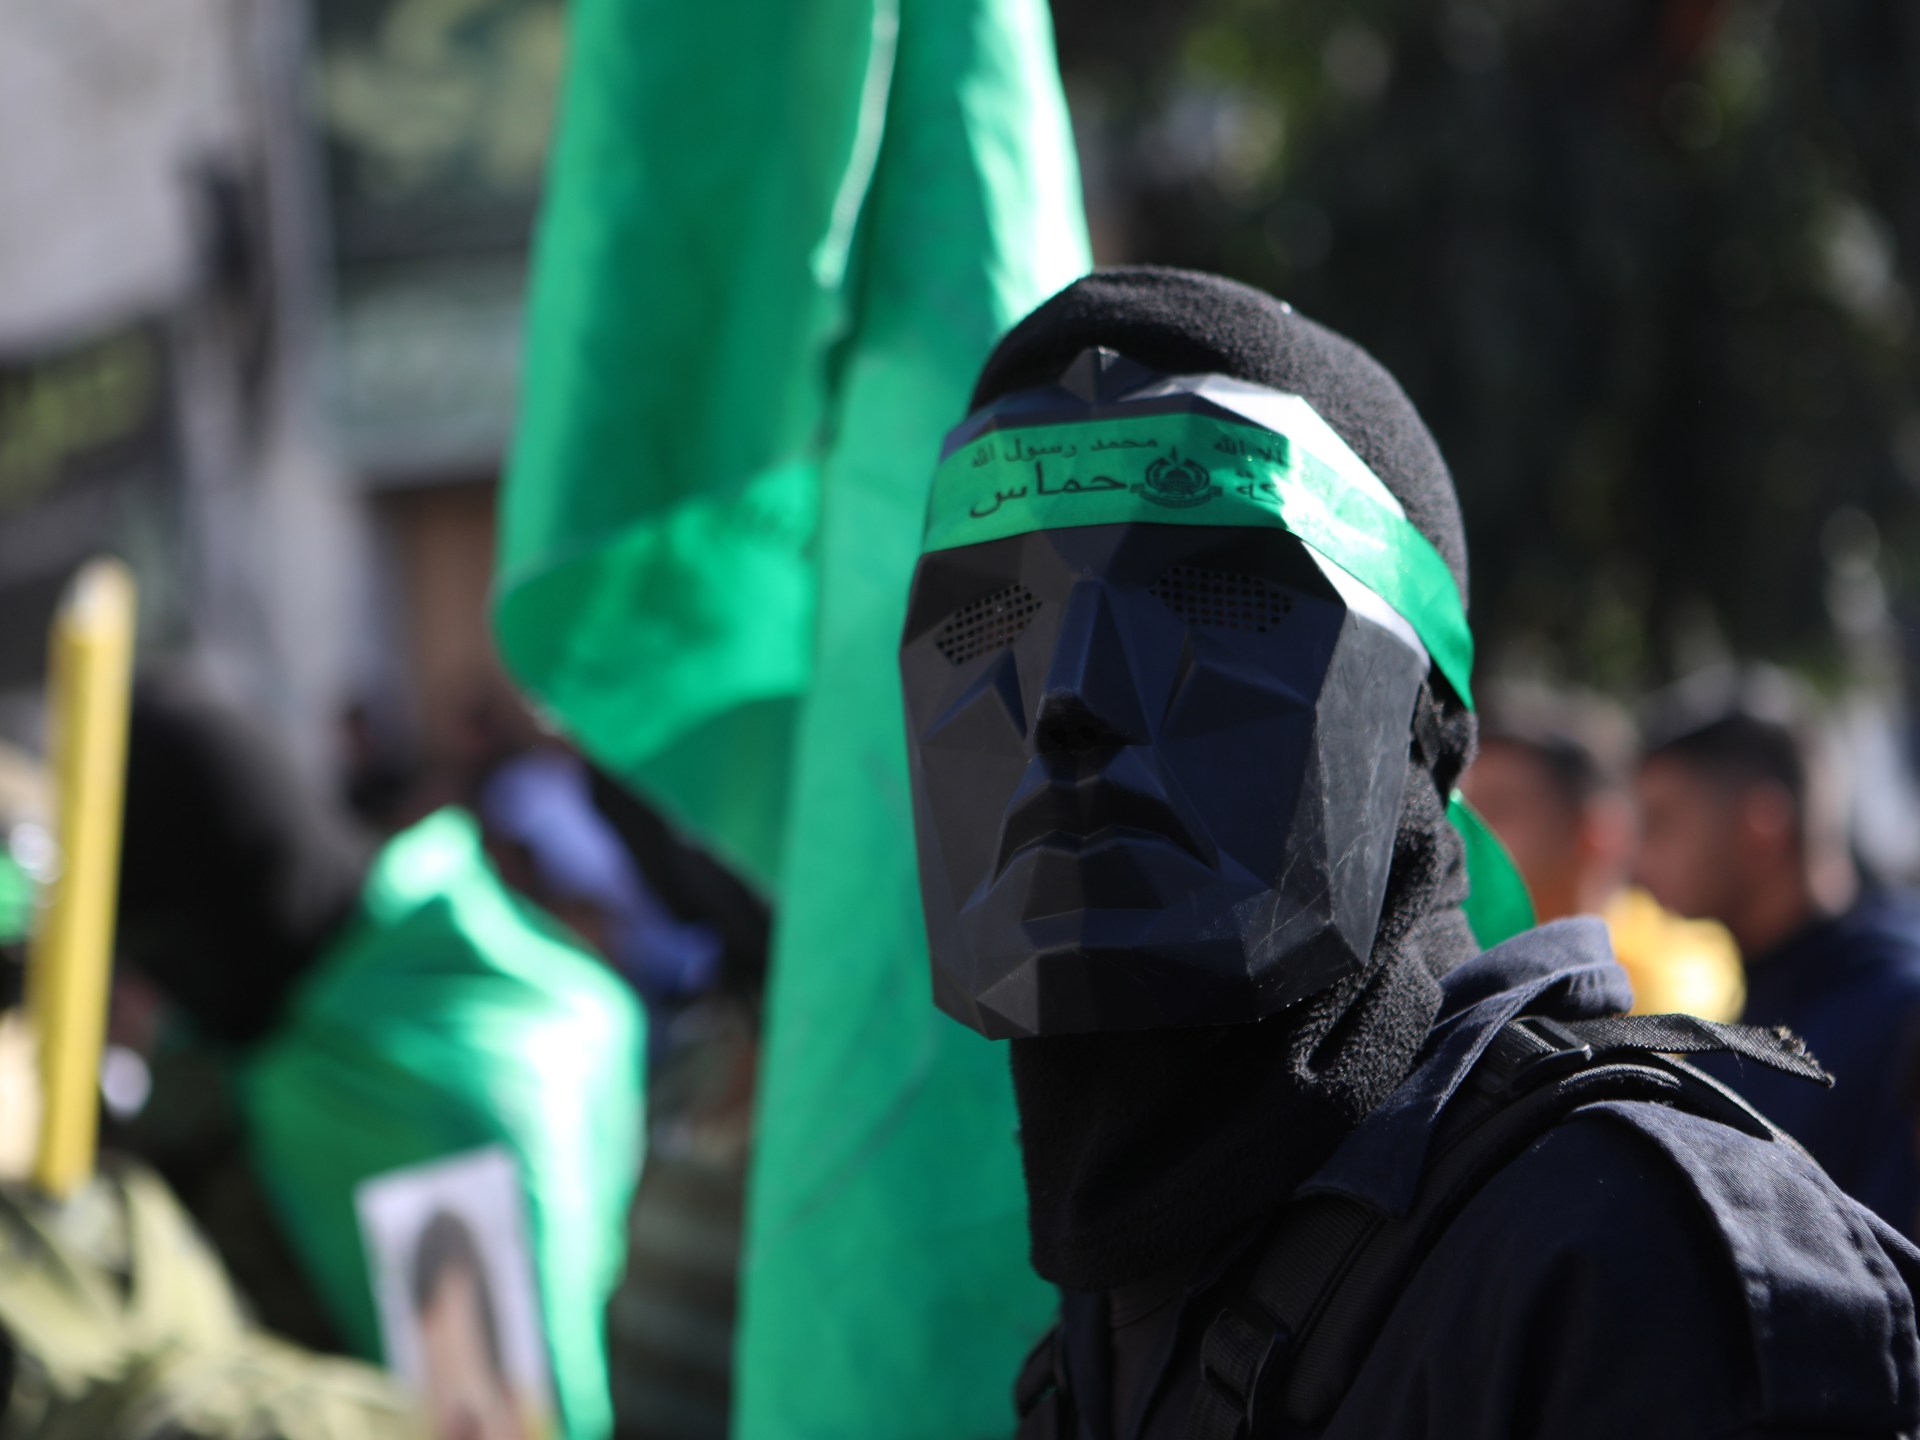 عالم بلا “حماس”؟! | آراء – البوكس نيوز